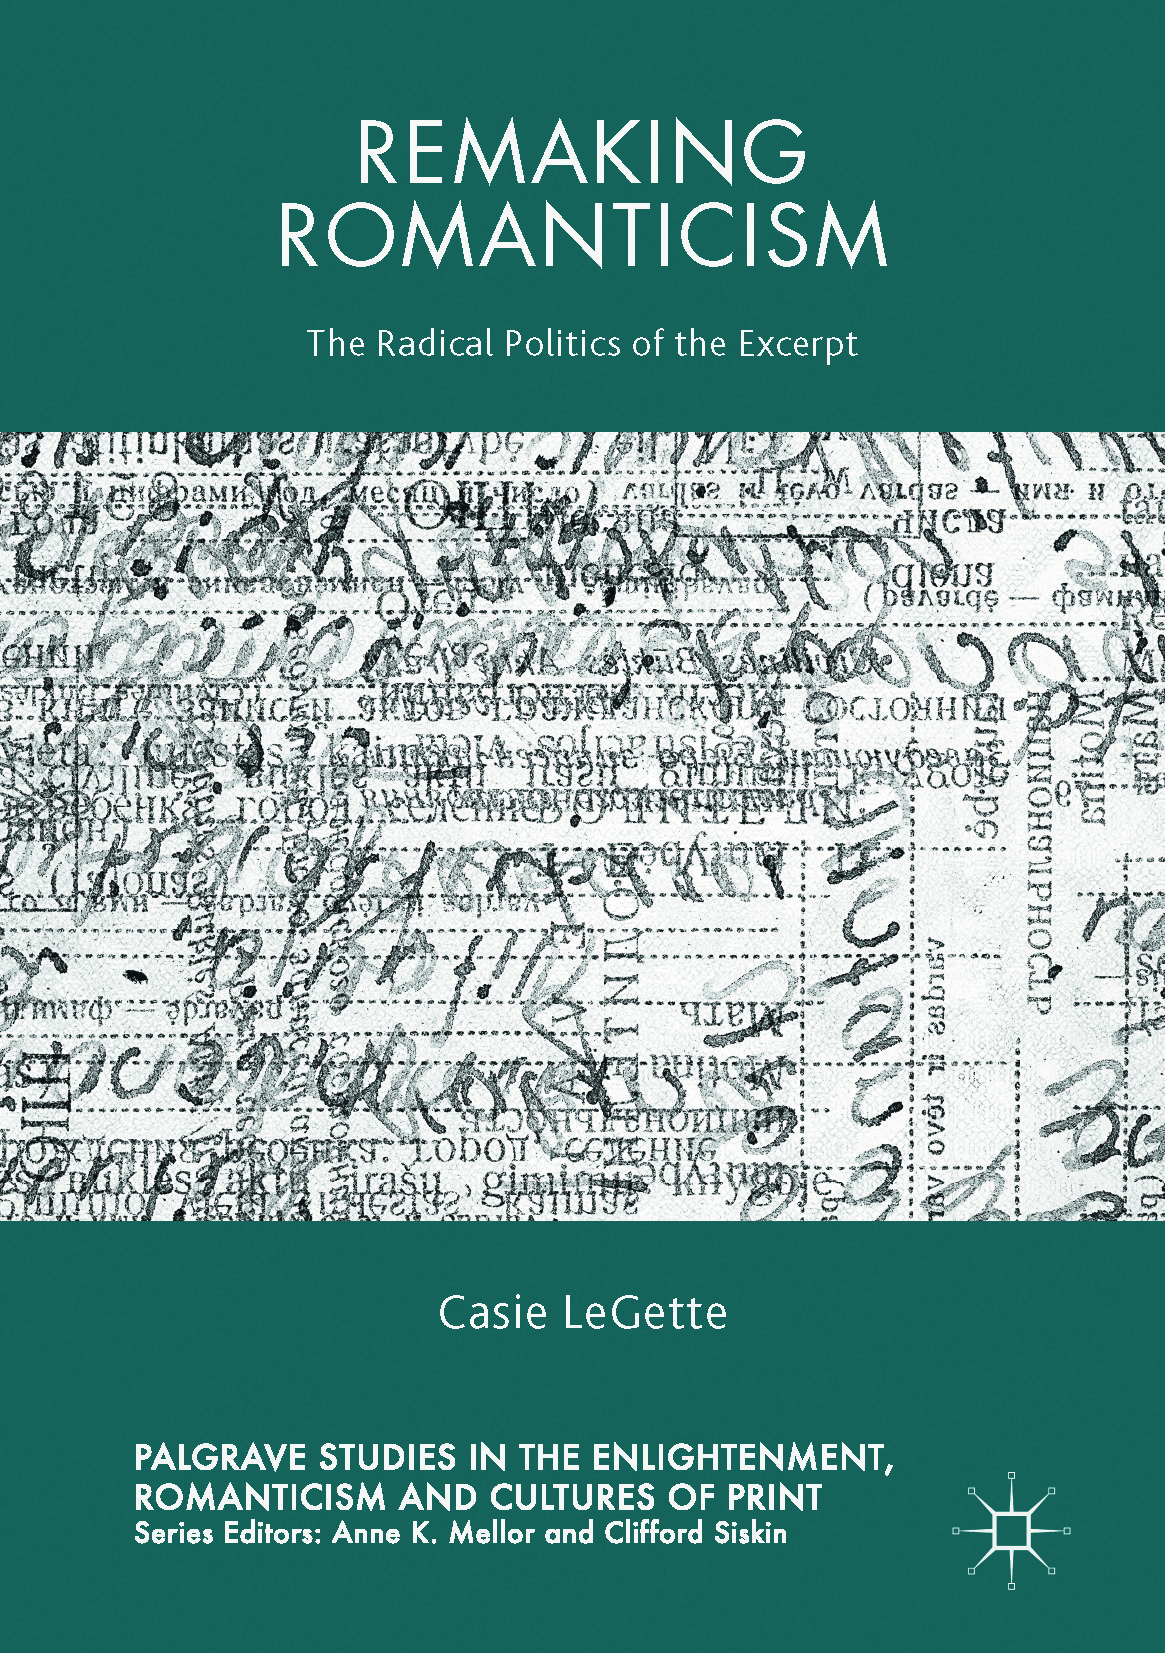 LeGette, Casie - Remaking Romanticism, ebook